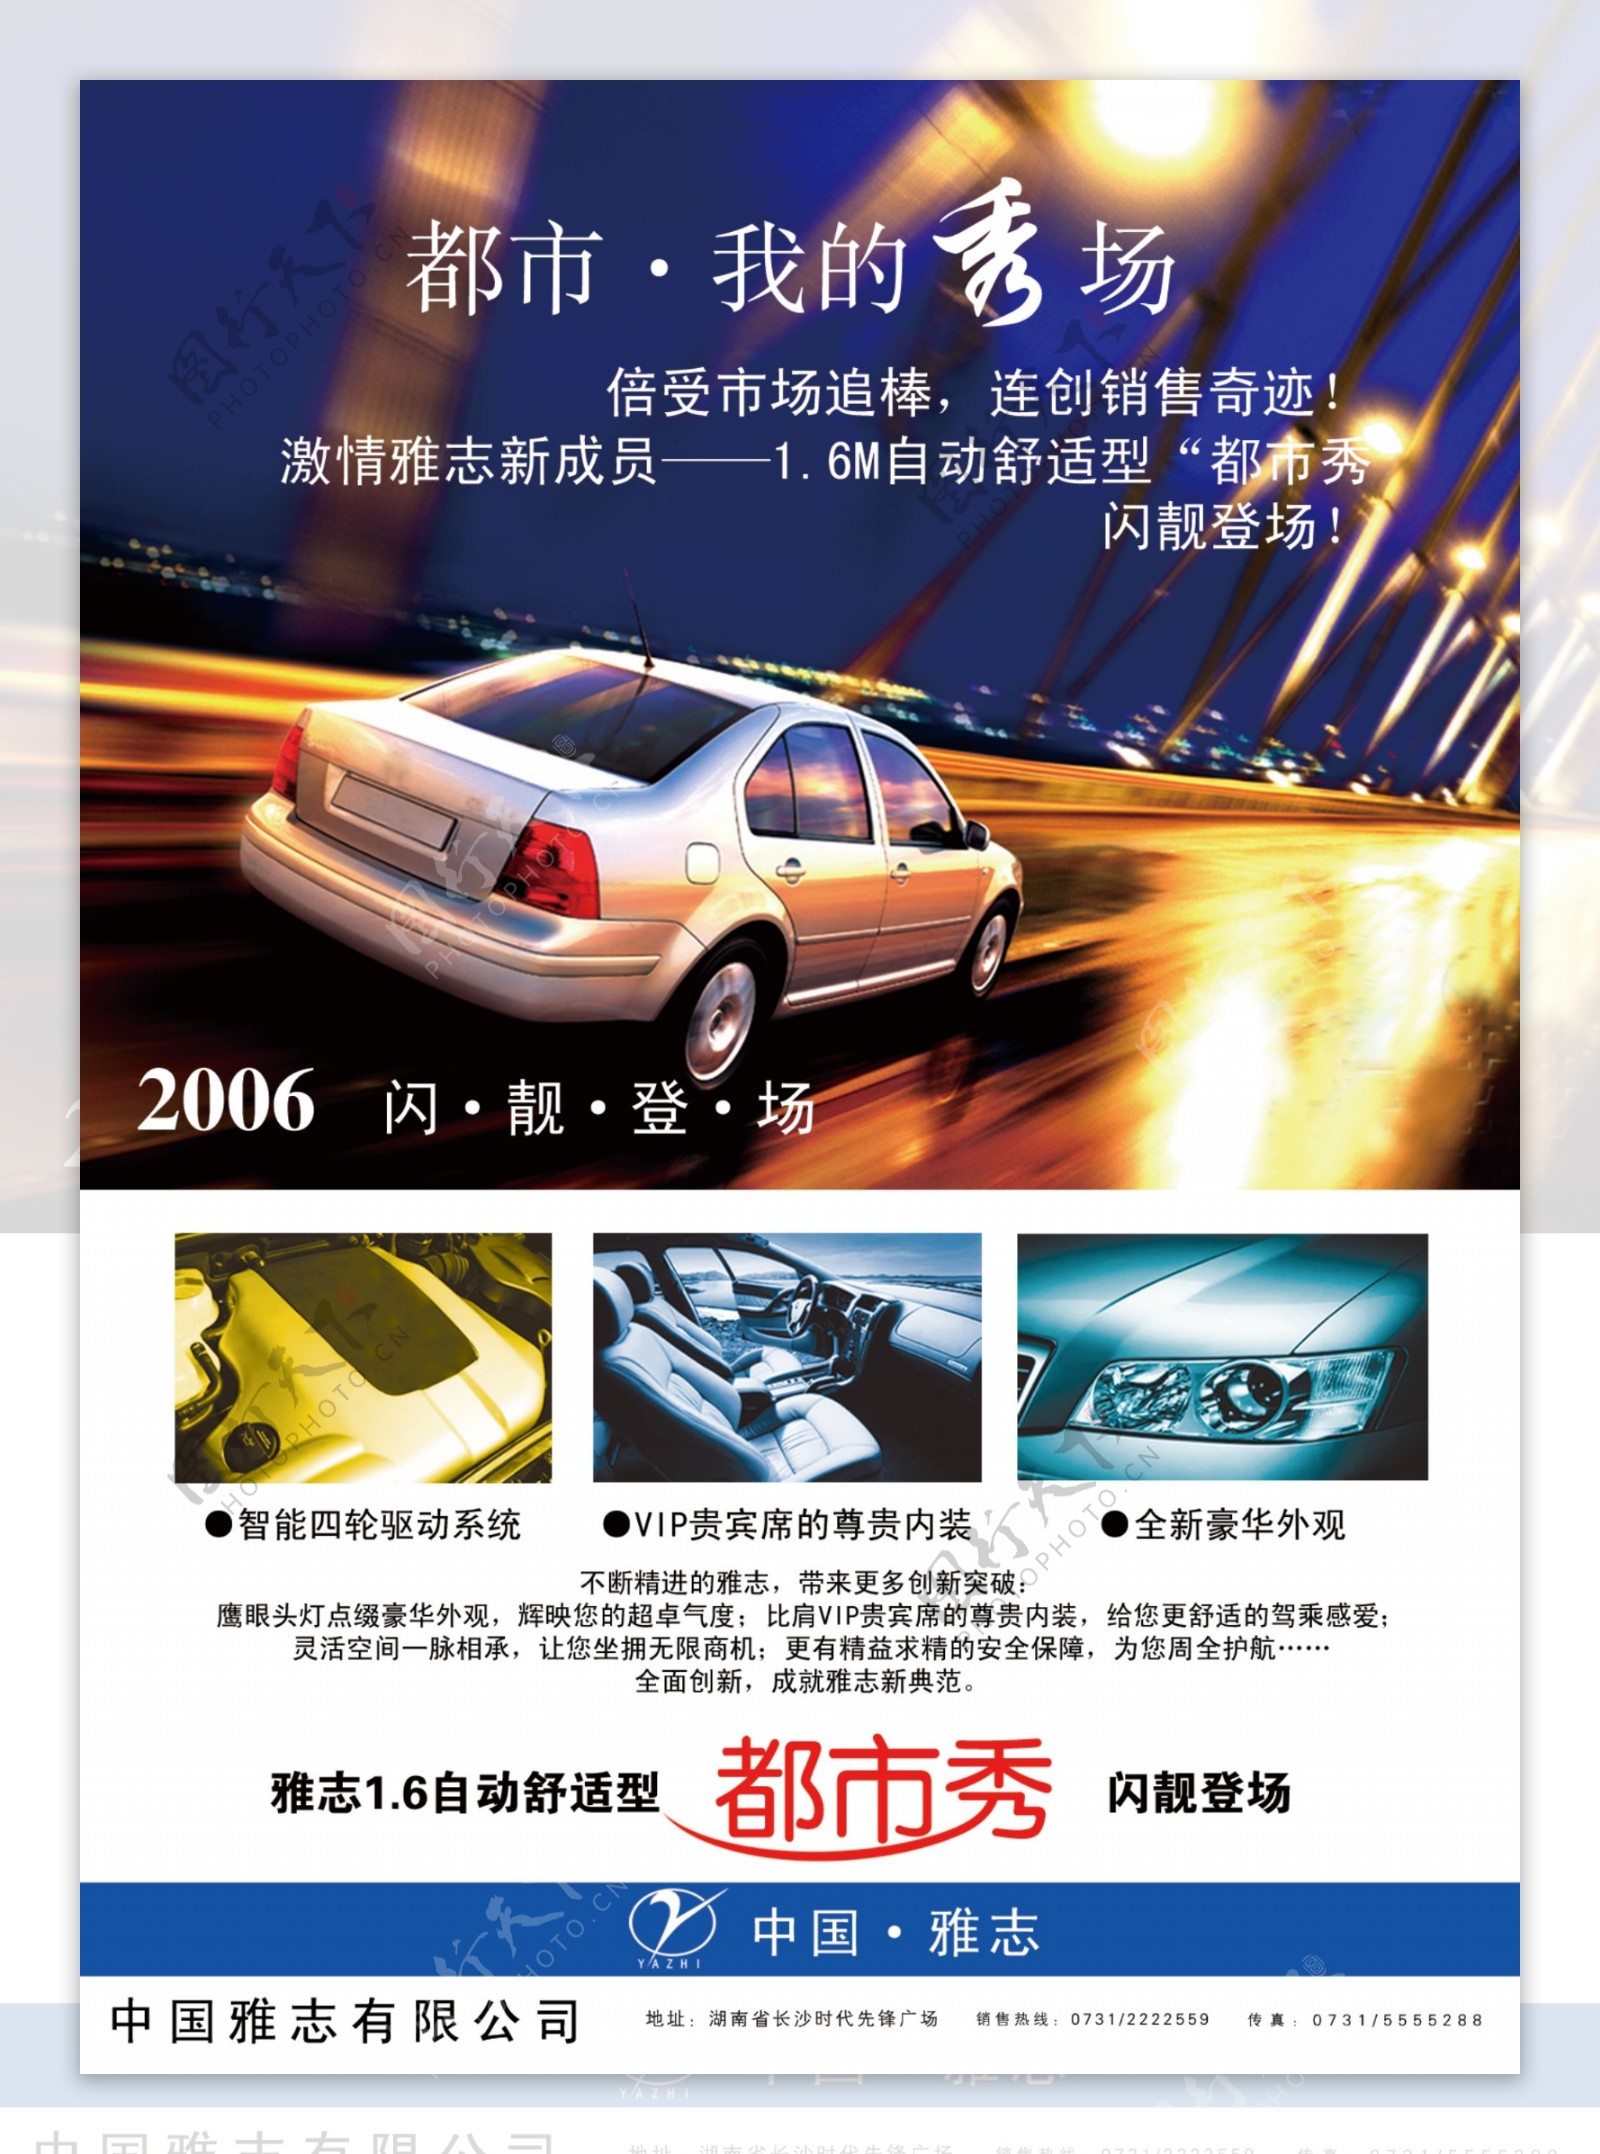 雅志汽车宣传广告PSD素材